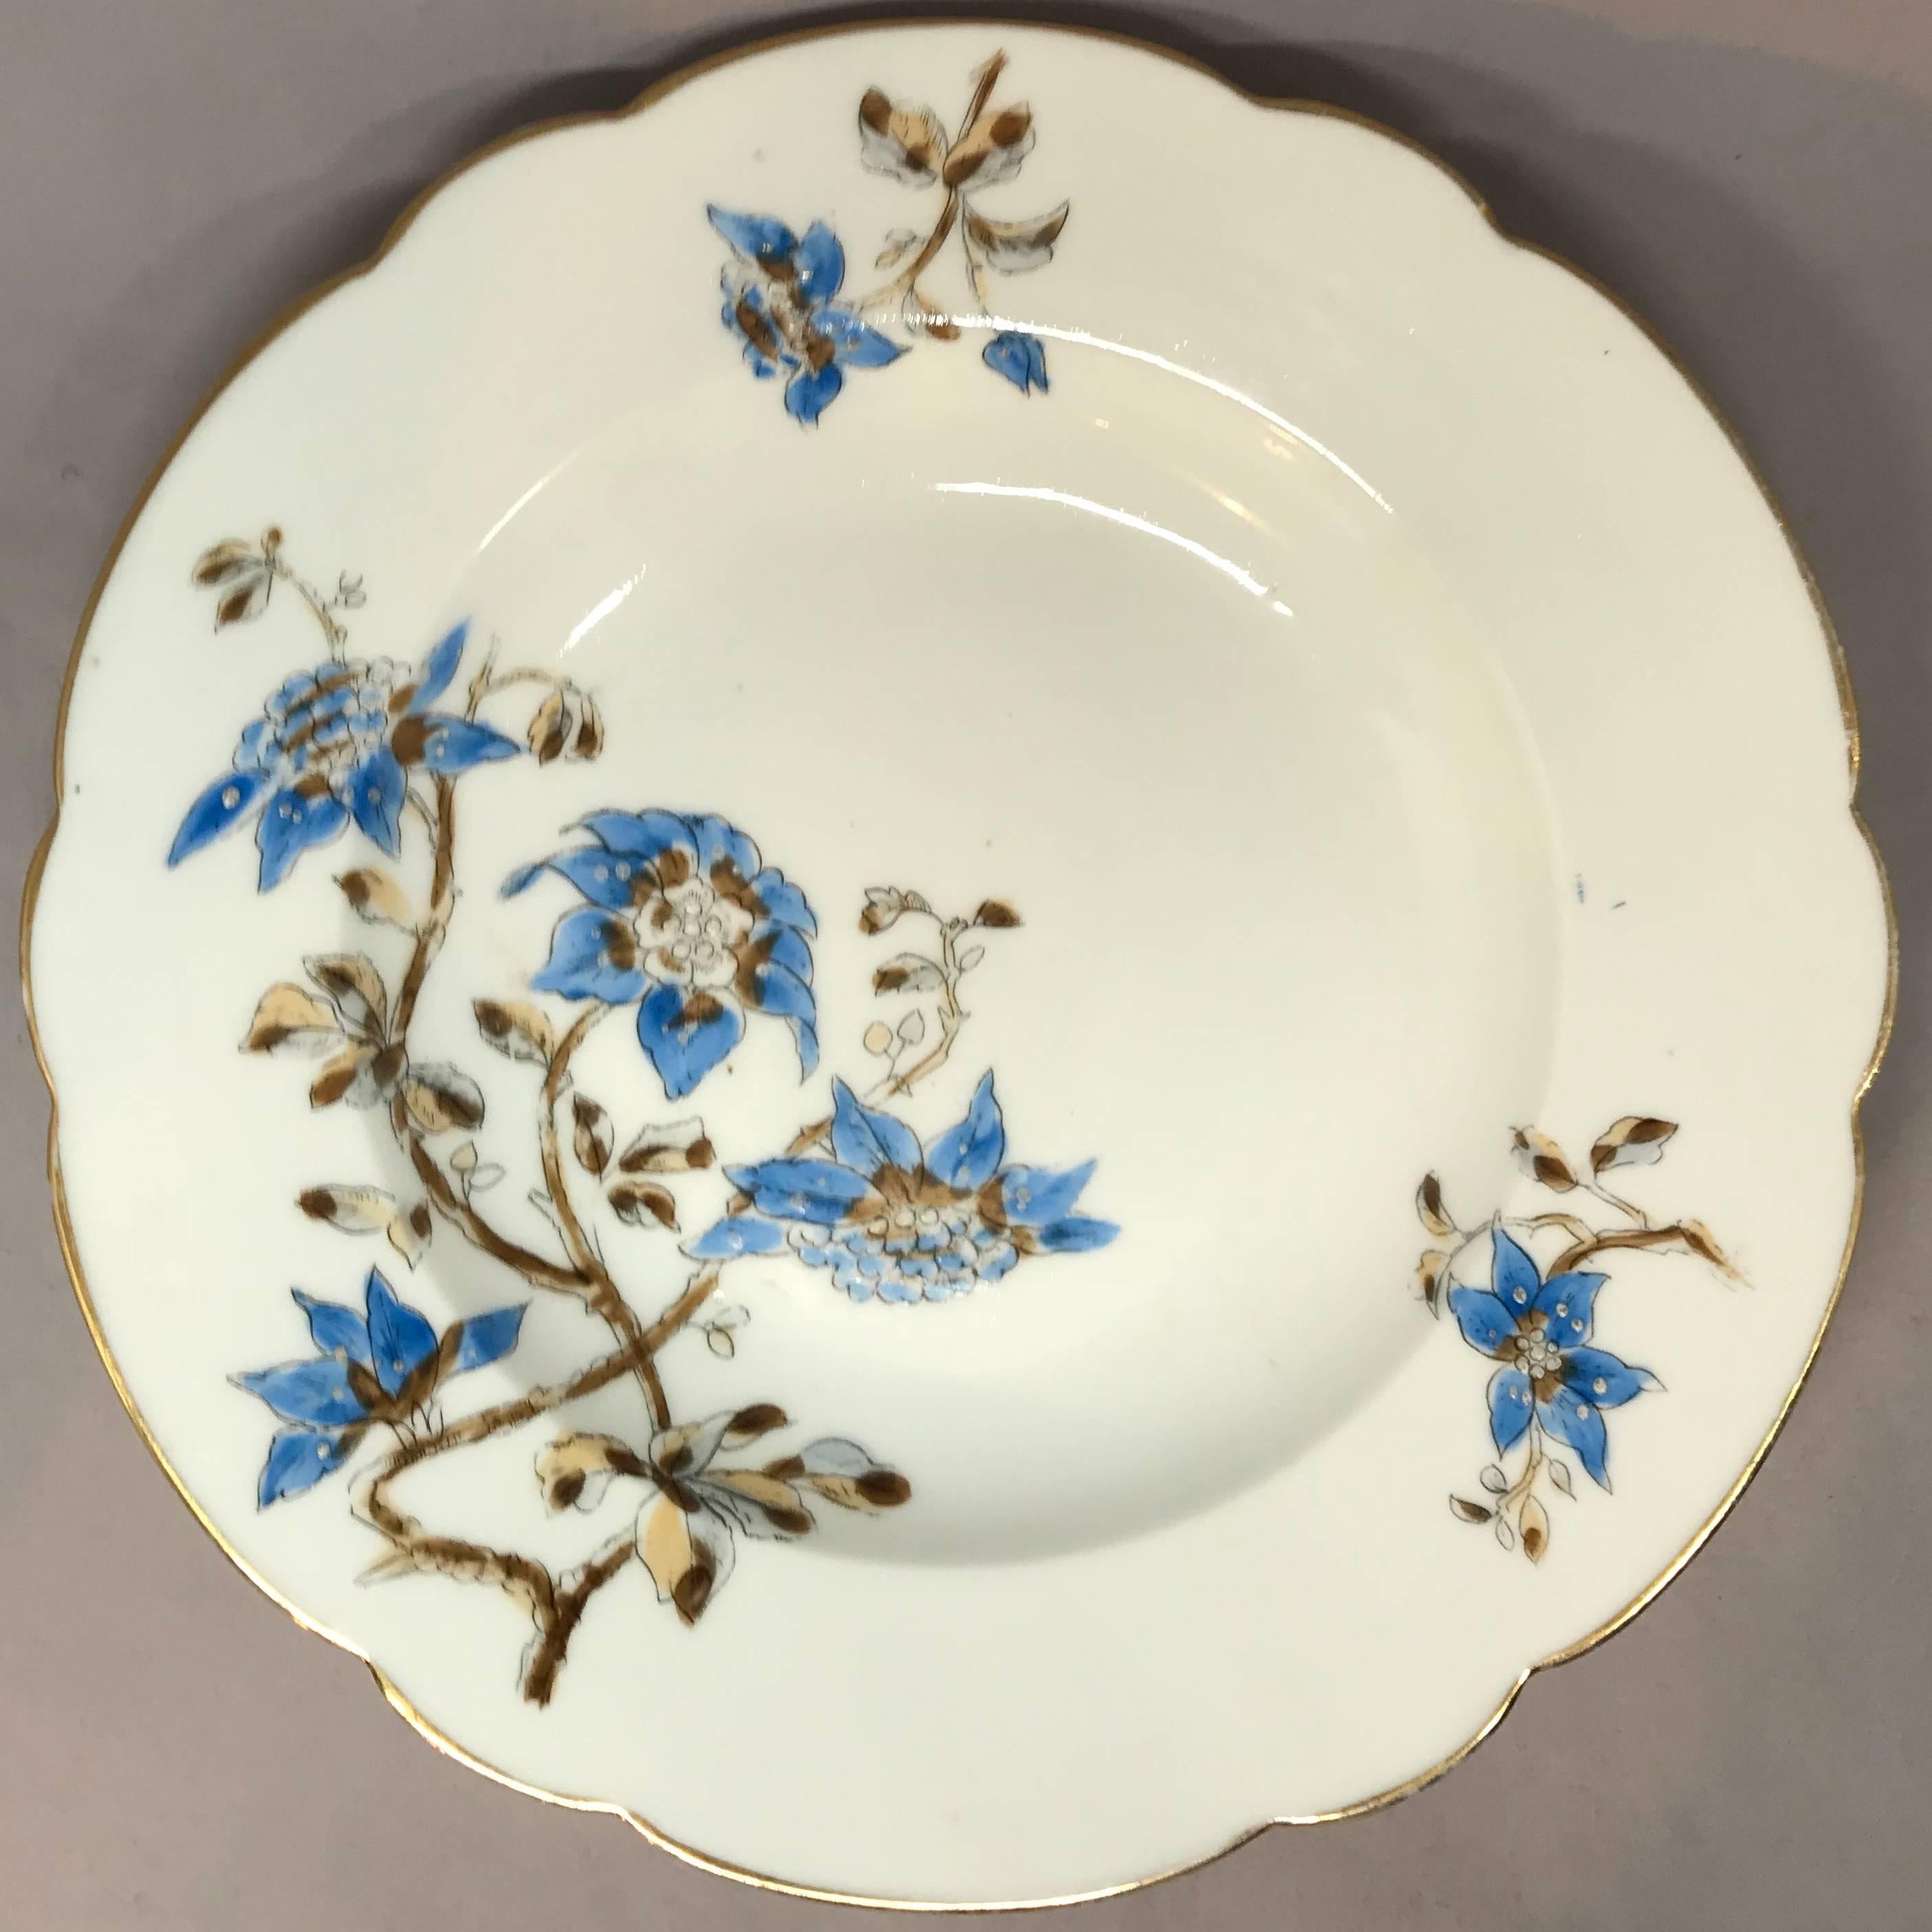 Ensemble de cinq assiettes italiennes à décor floral bleu et blanc. Cinq assiettes creuses lobées et dorées à décor floral bleu et brun, Italie, vers 1890. 
Dimensions : 9,88